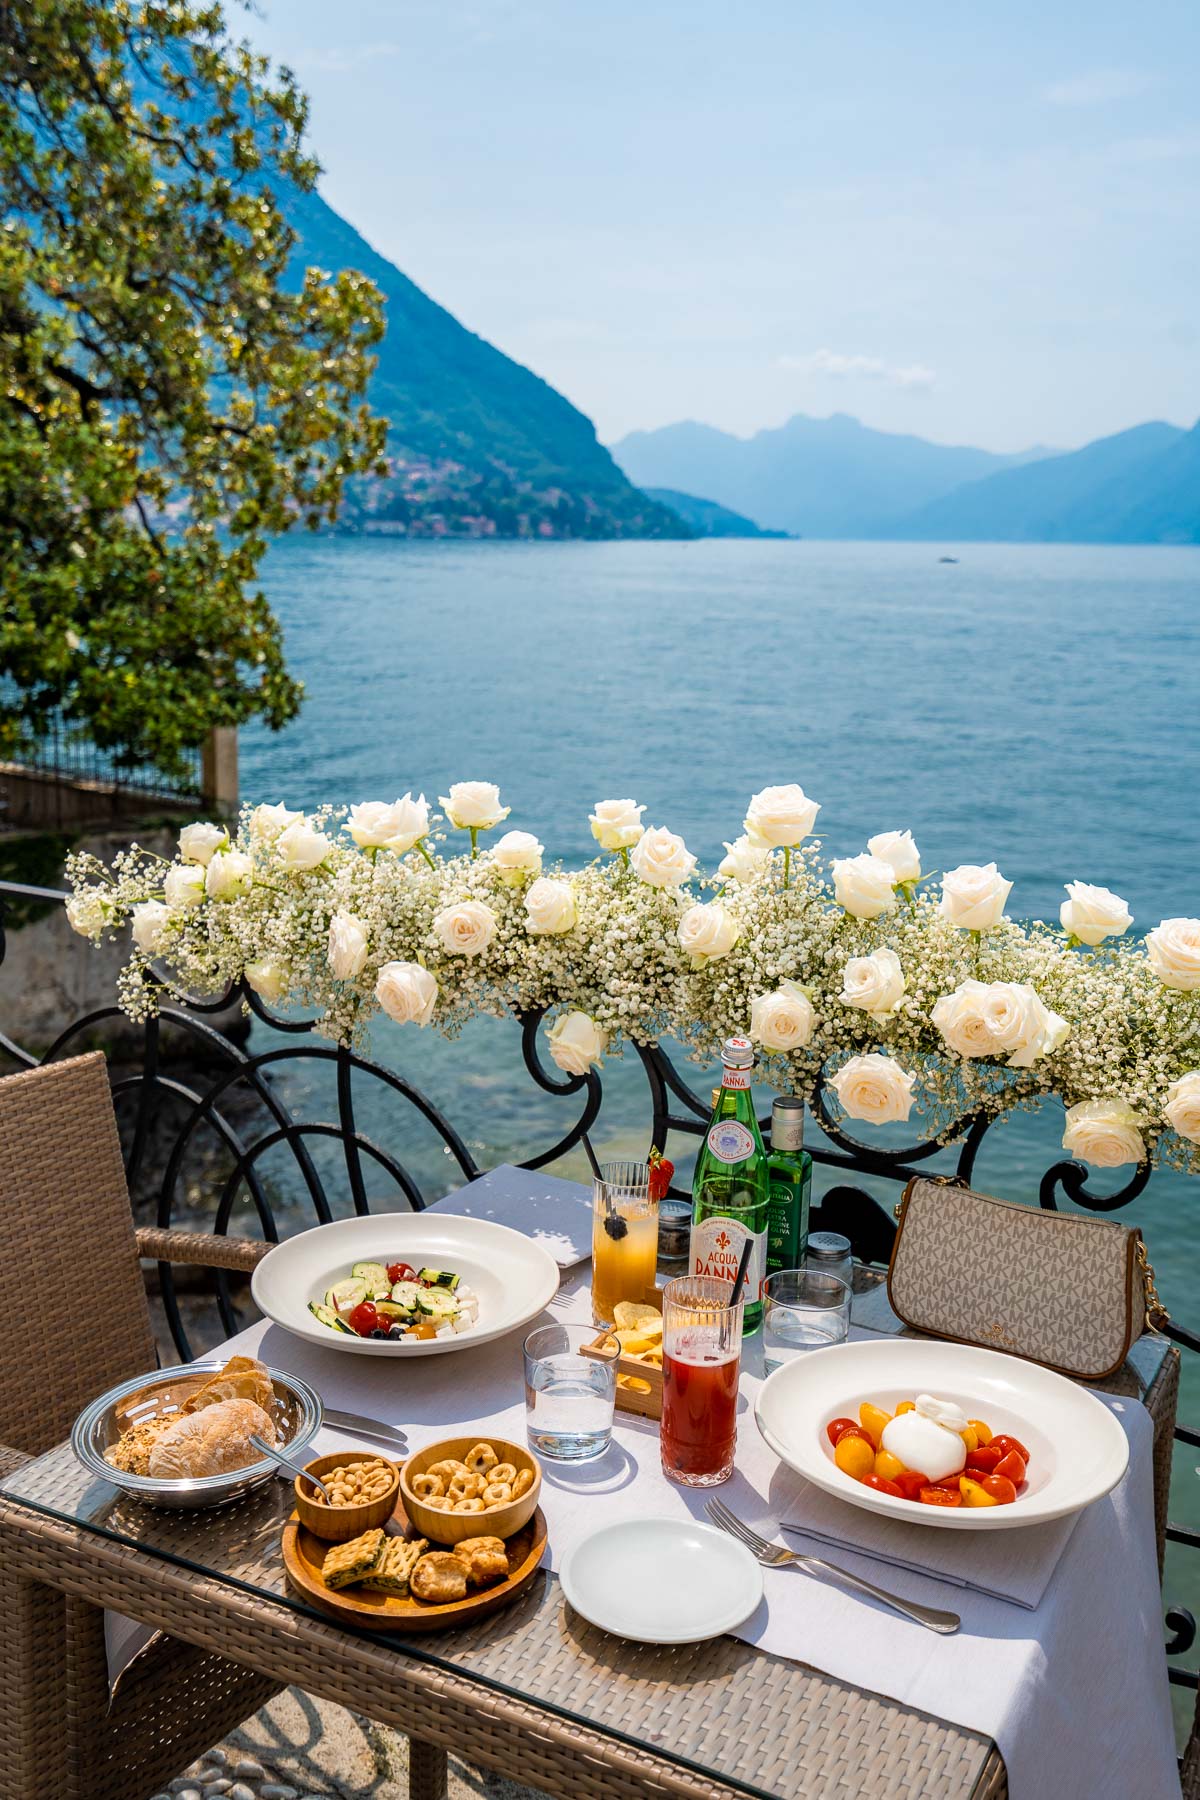 Lunch at Bar Giardino at Hotel Royal Victoria in Varenna, Lake Como